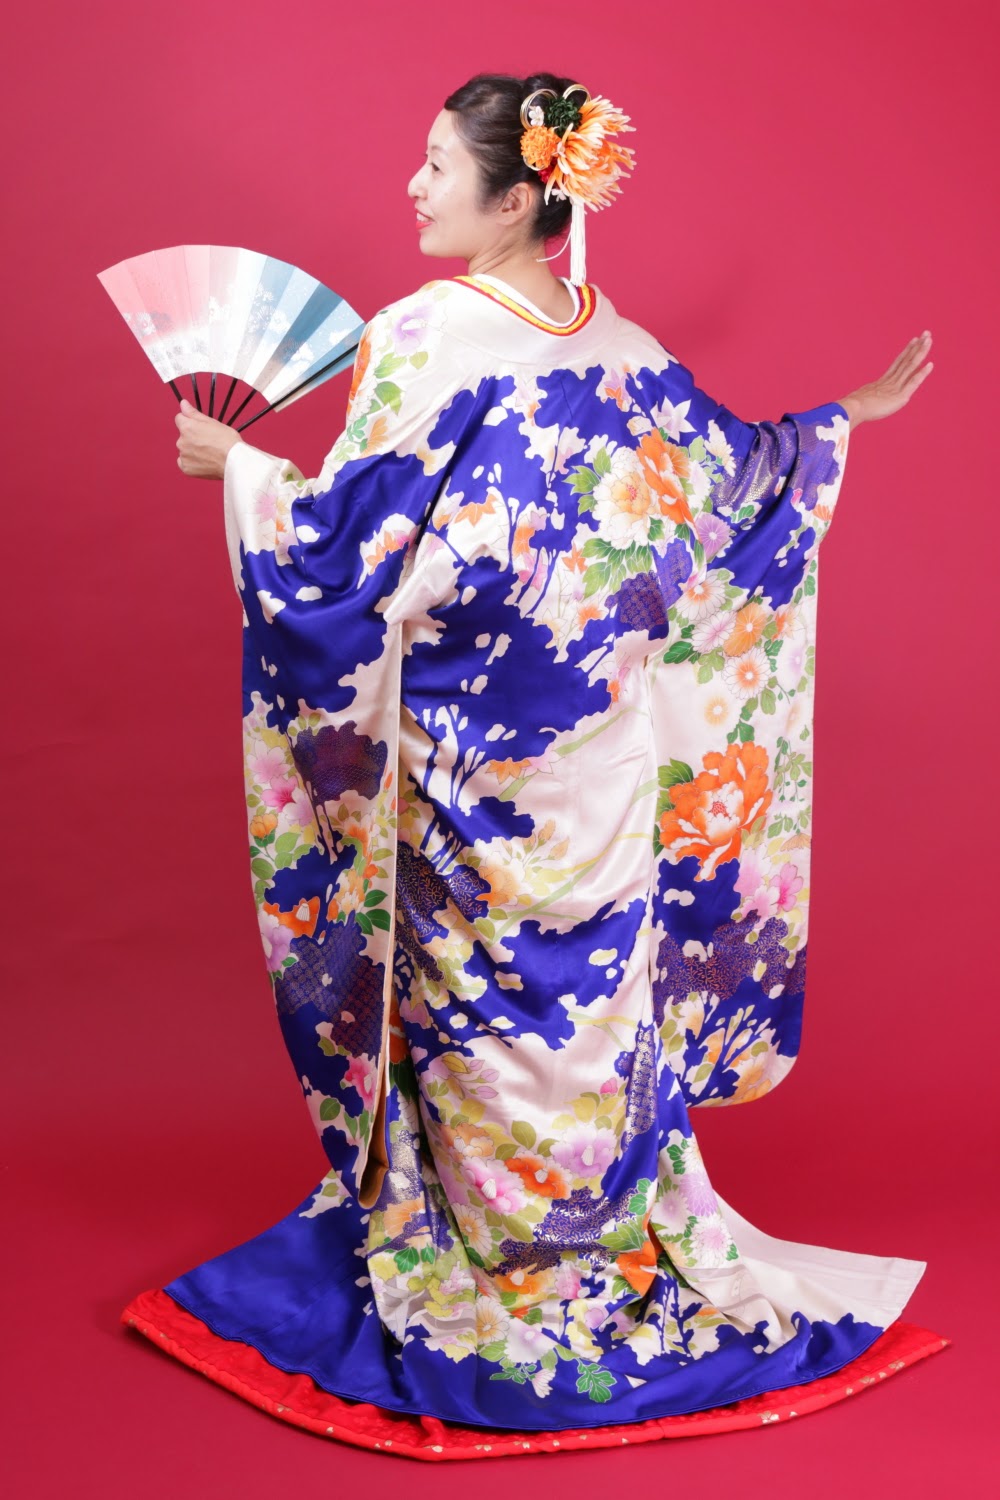 Tổng Hợp 50+ Hình Ảnh Kimono Đẹp, Nhẹ Nhàng, Ấn Tượng Nhất 2